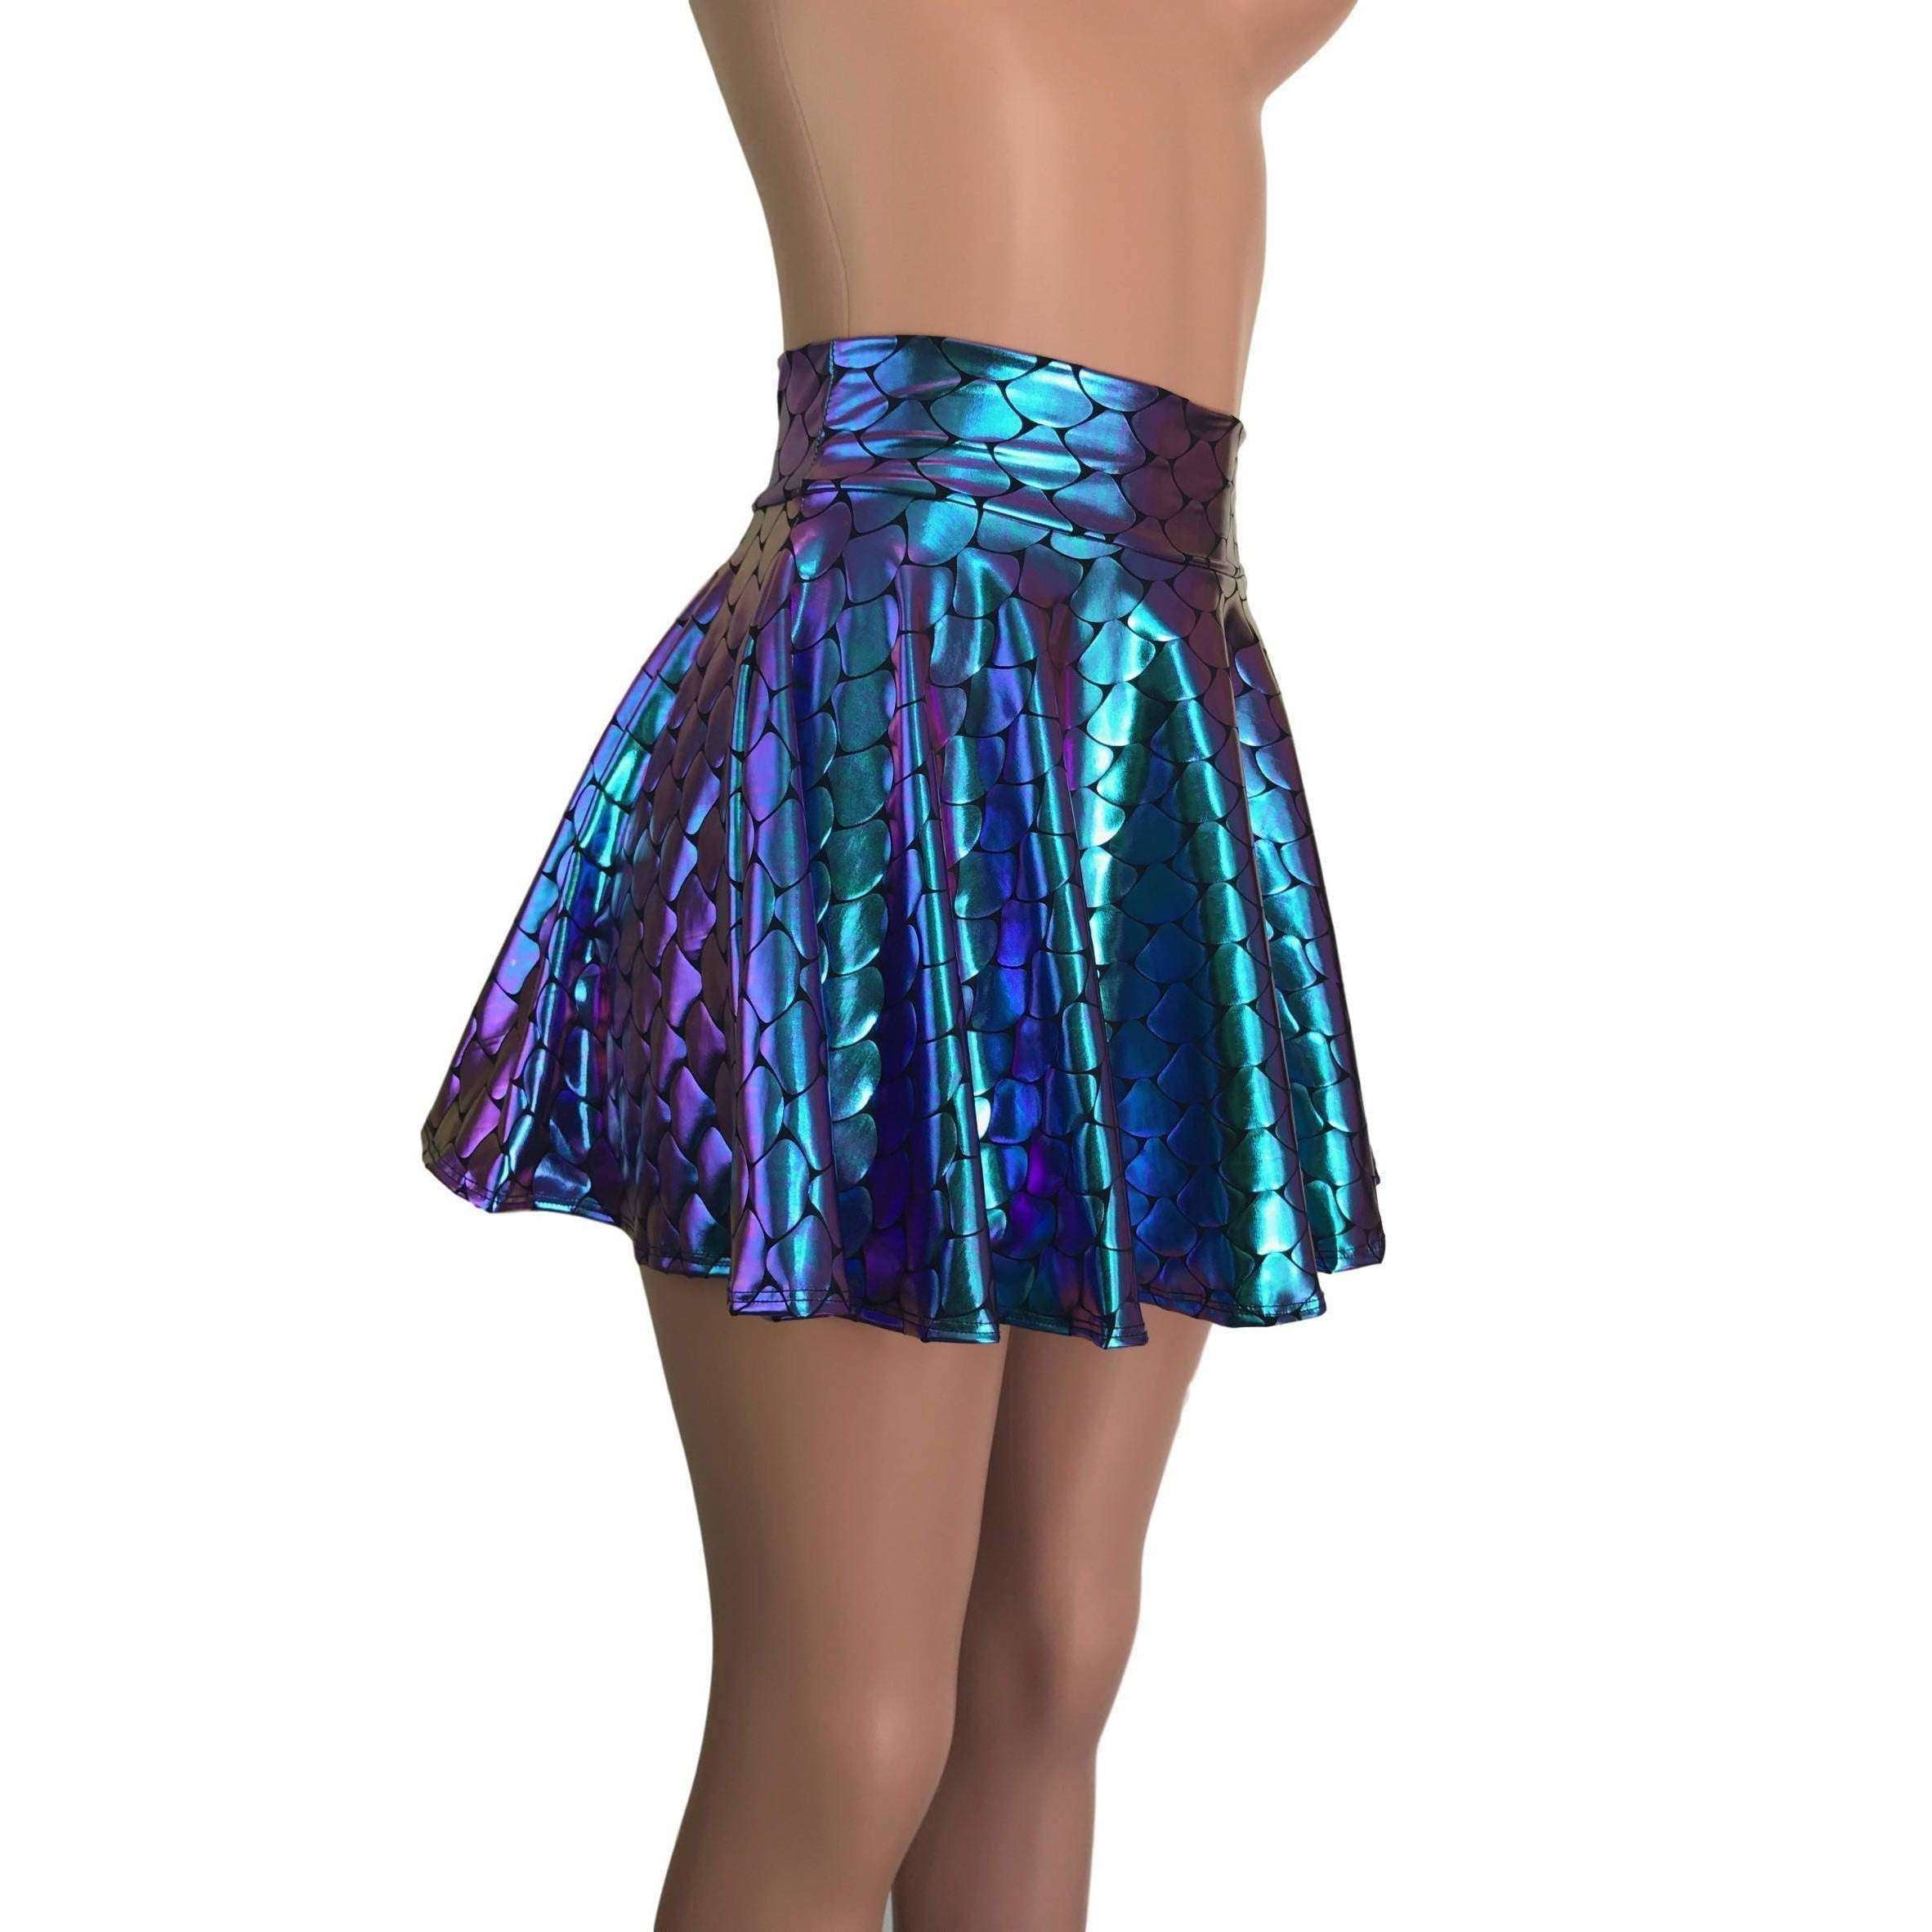 Mermaid Short Skirt Costume snohomish county